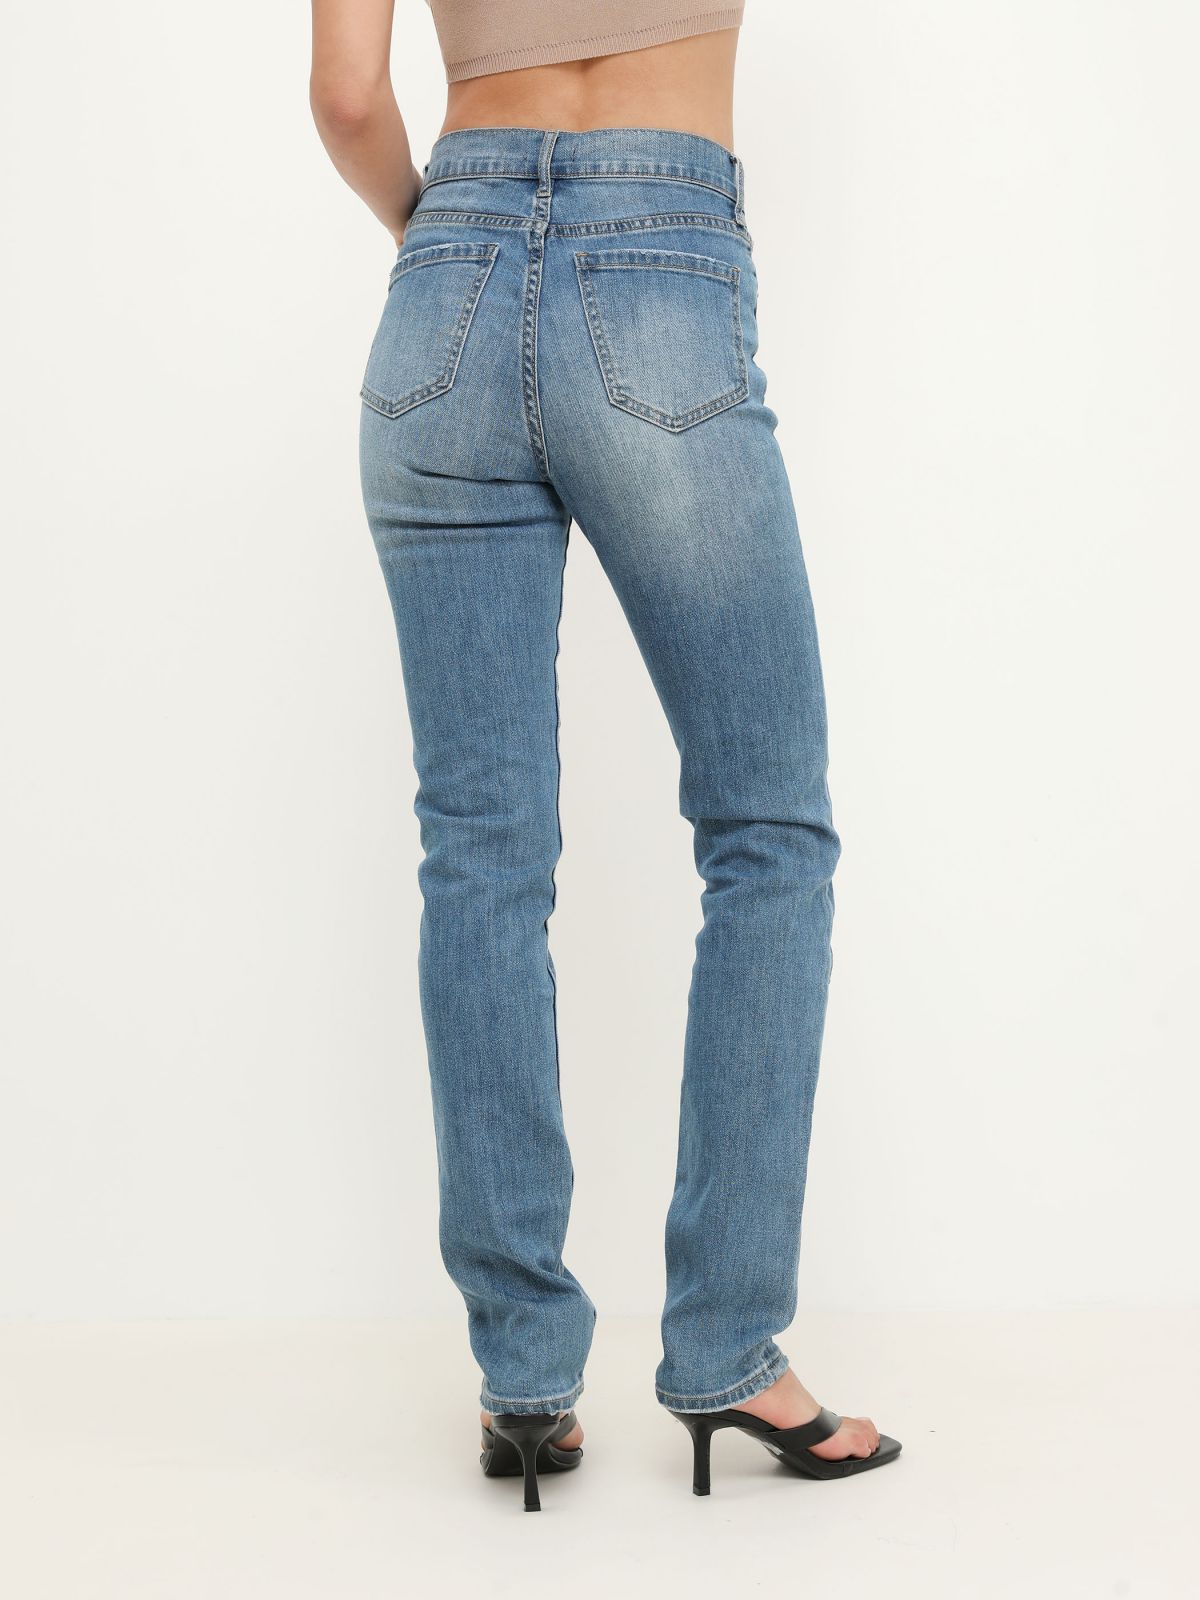  ג'ינס גבוה בשטיפה בהירה של TERMINAL X